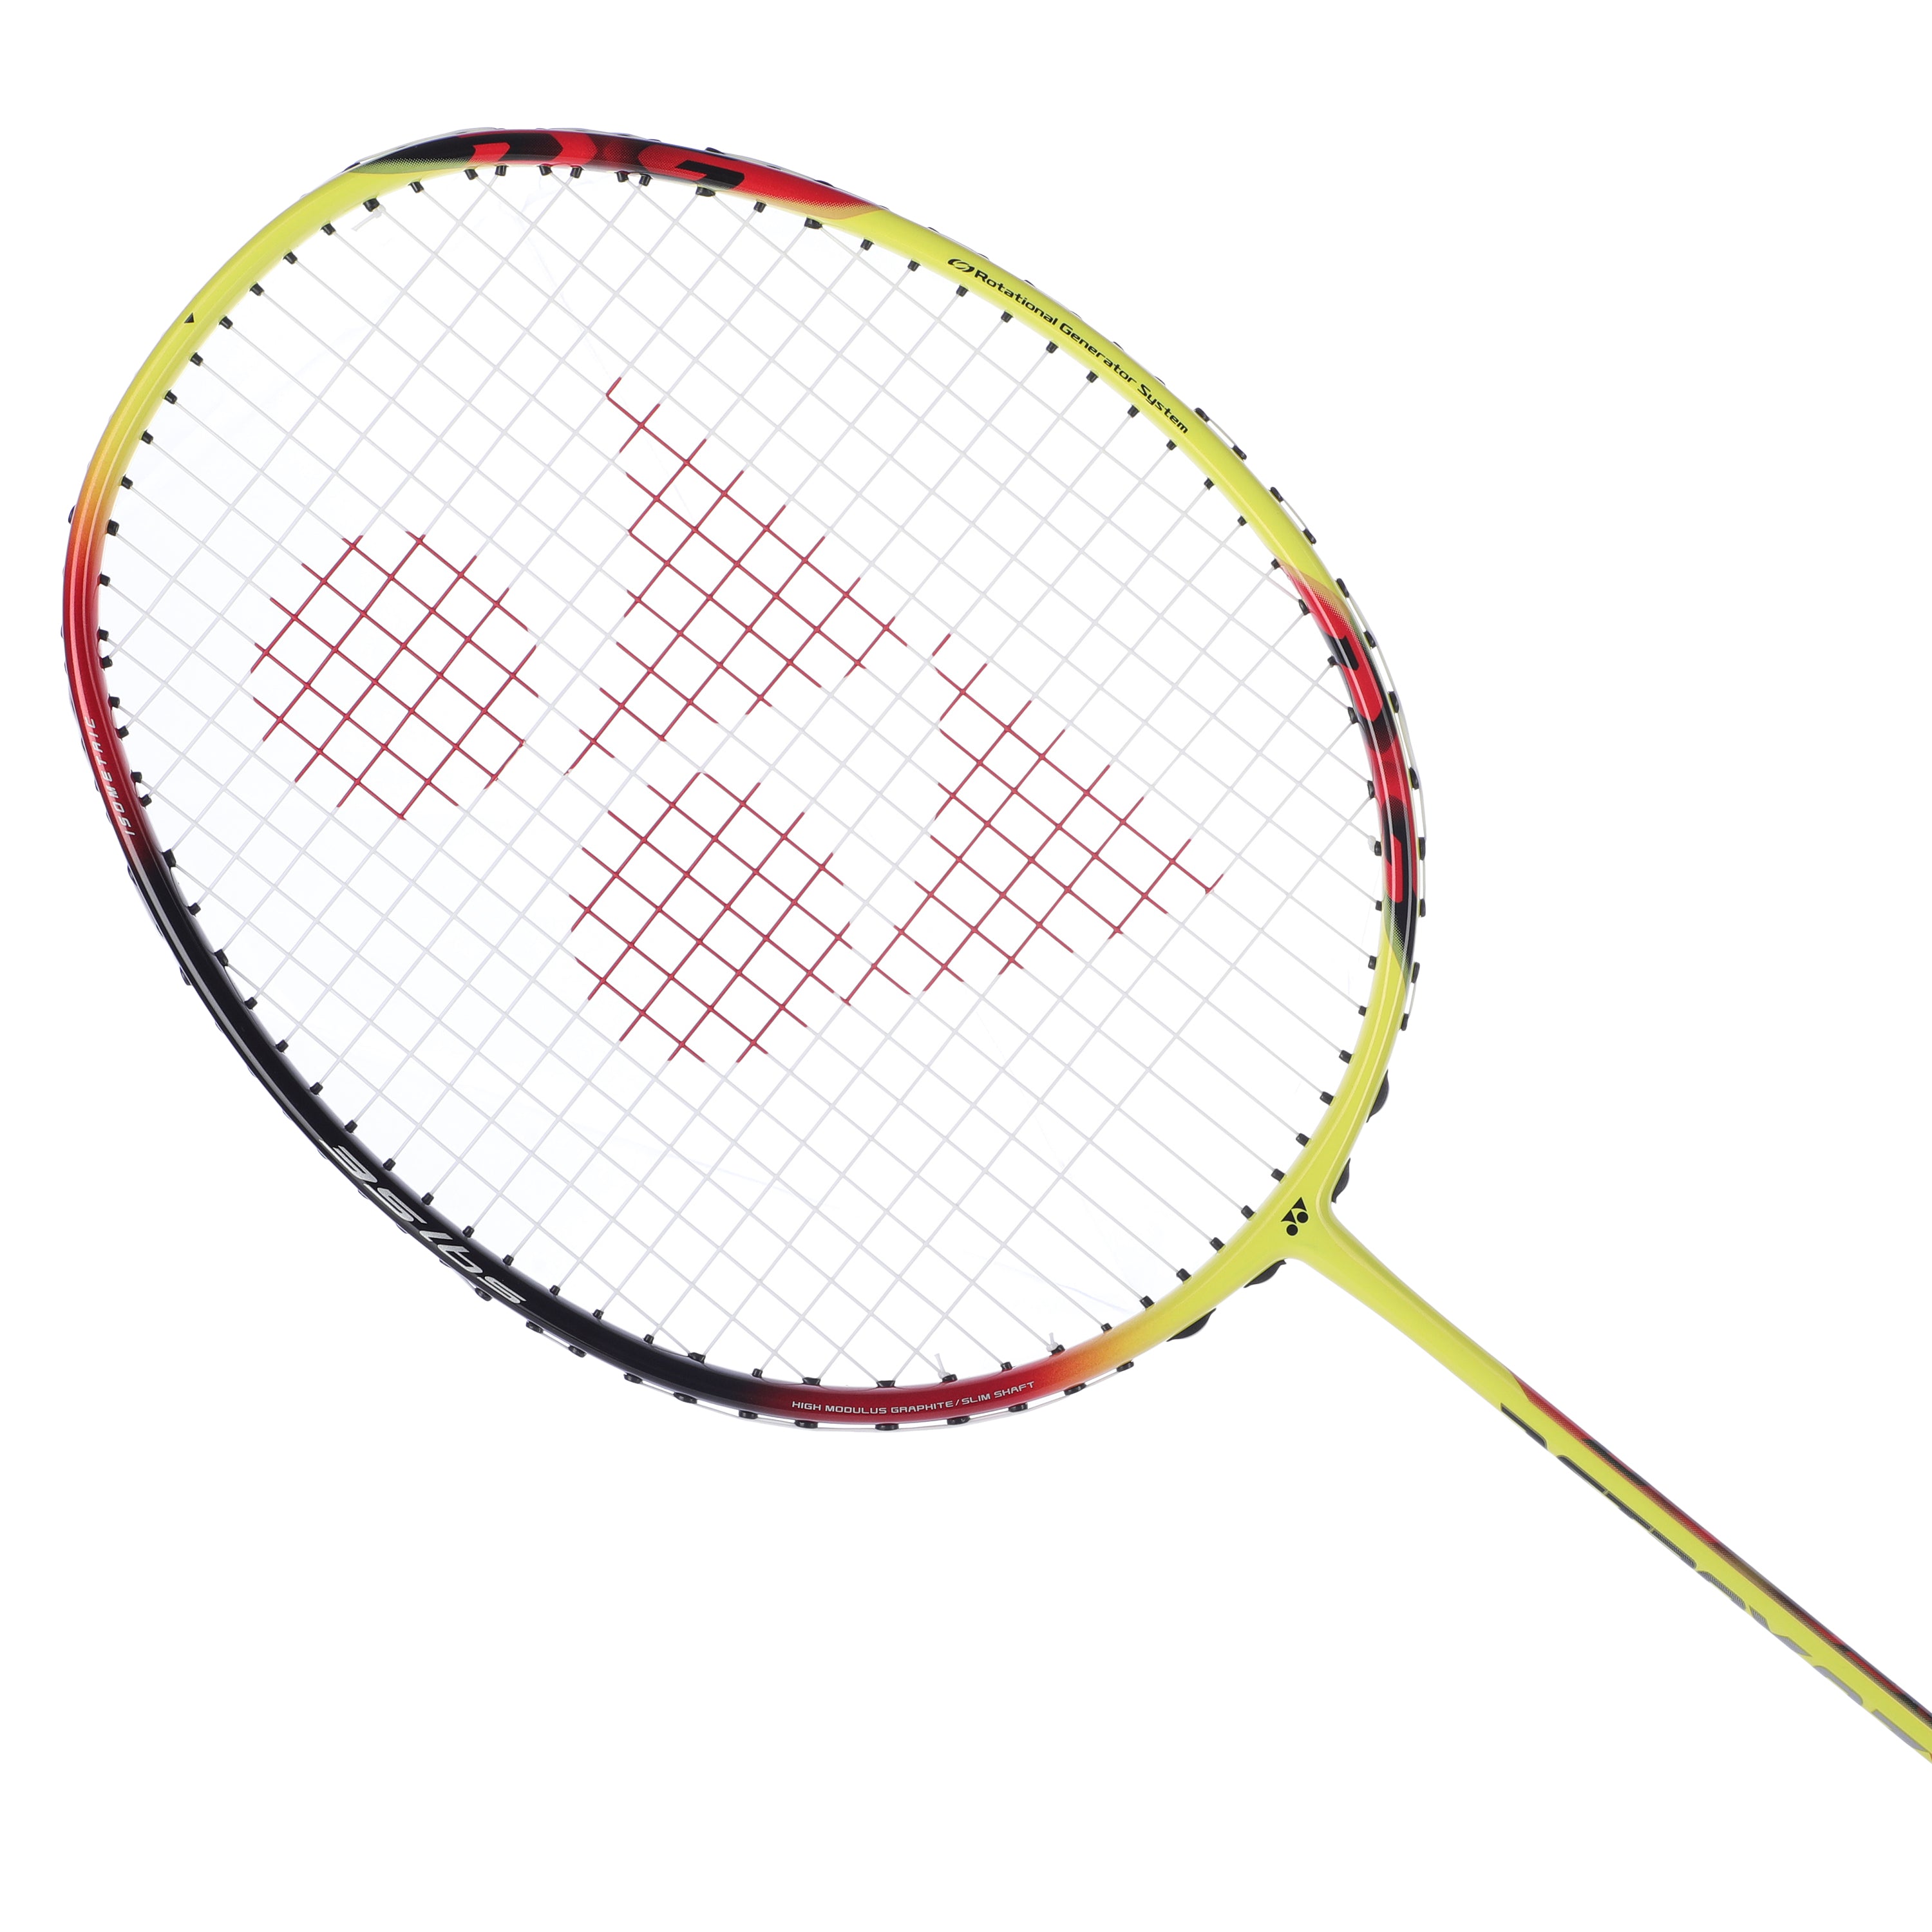 YONEX Astrox 0.7 DG Multicolor Strung Badminton Racket